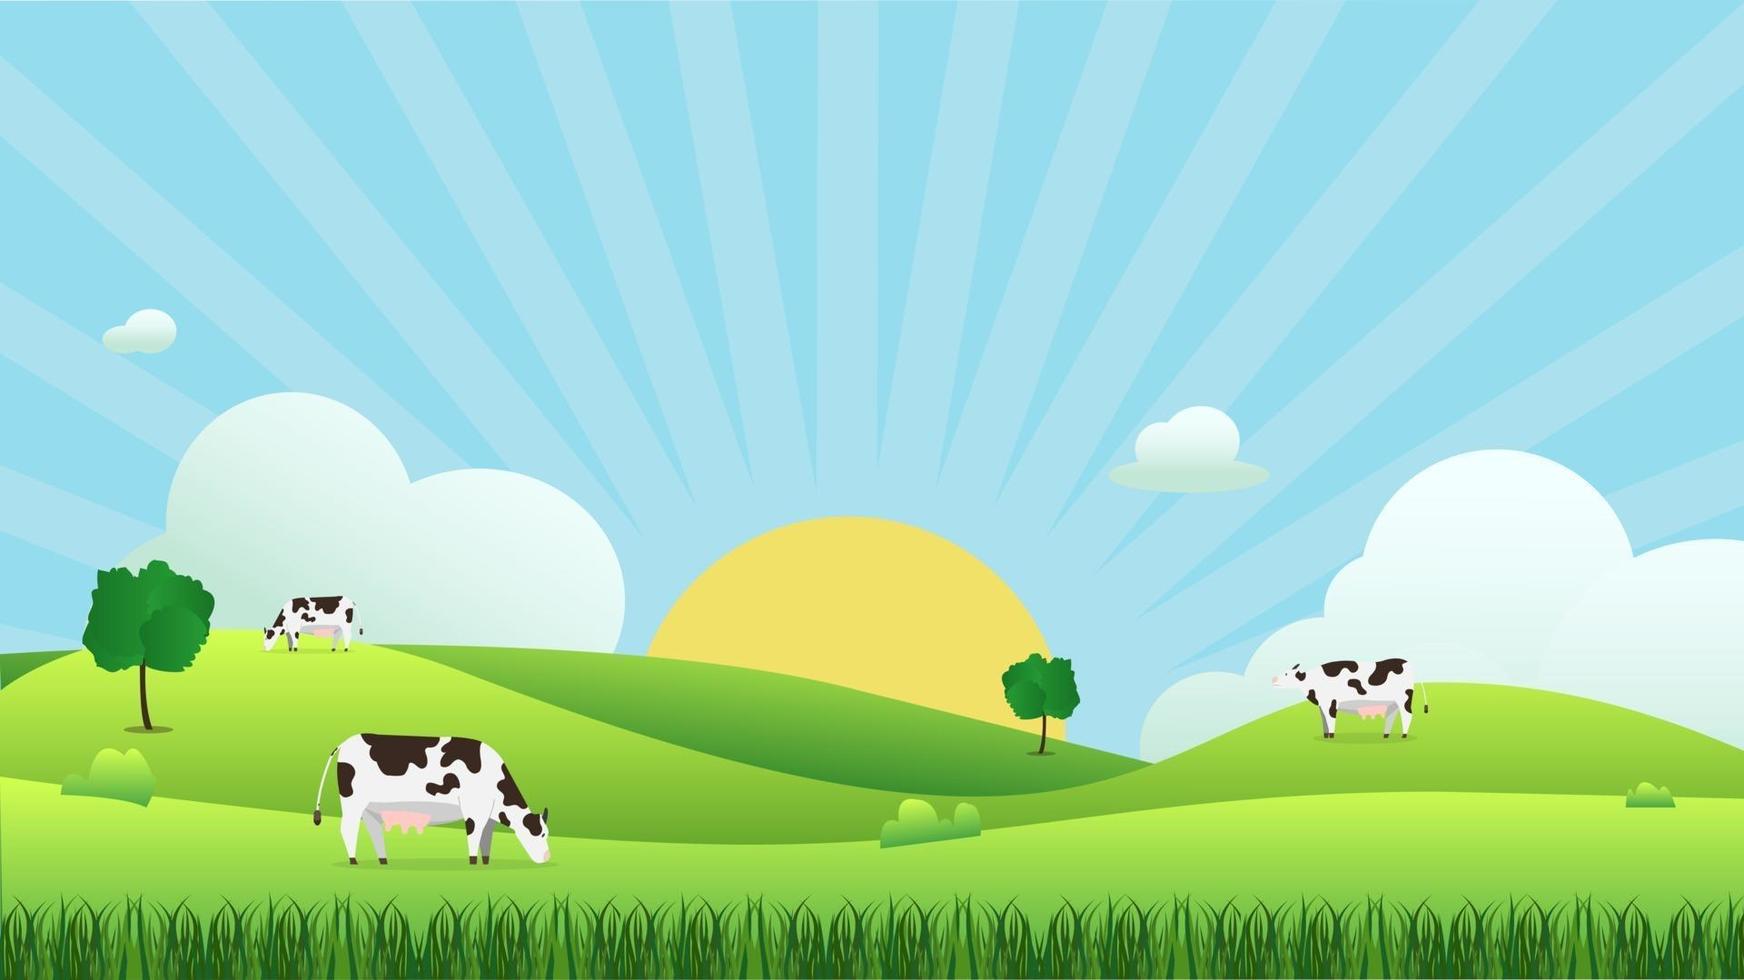 paysage de prairie avec vache mangeant de l'herbe, illustration vectorielle.champ vert et bleu ciel et soleil brillent avec fond de nuage blanc.belle scène de nature avec lever de soleil.vache avec scène naturelle. vecteur